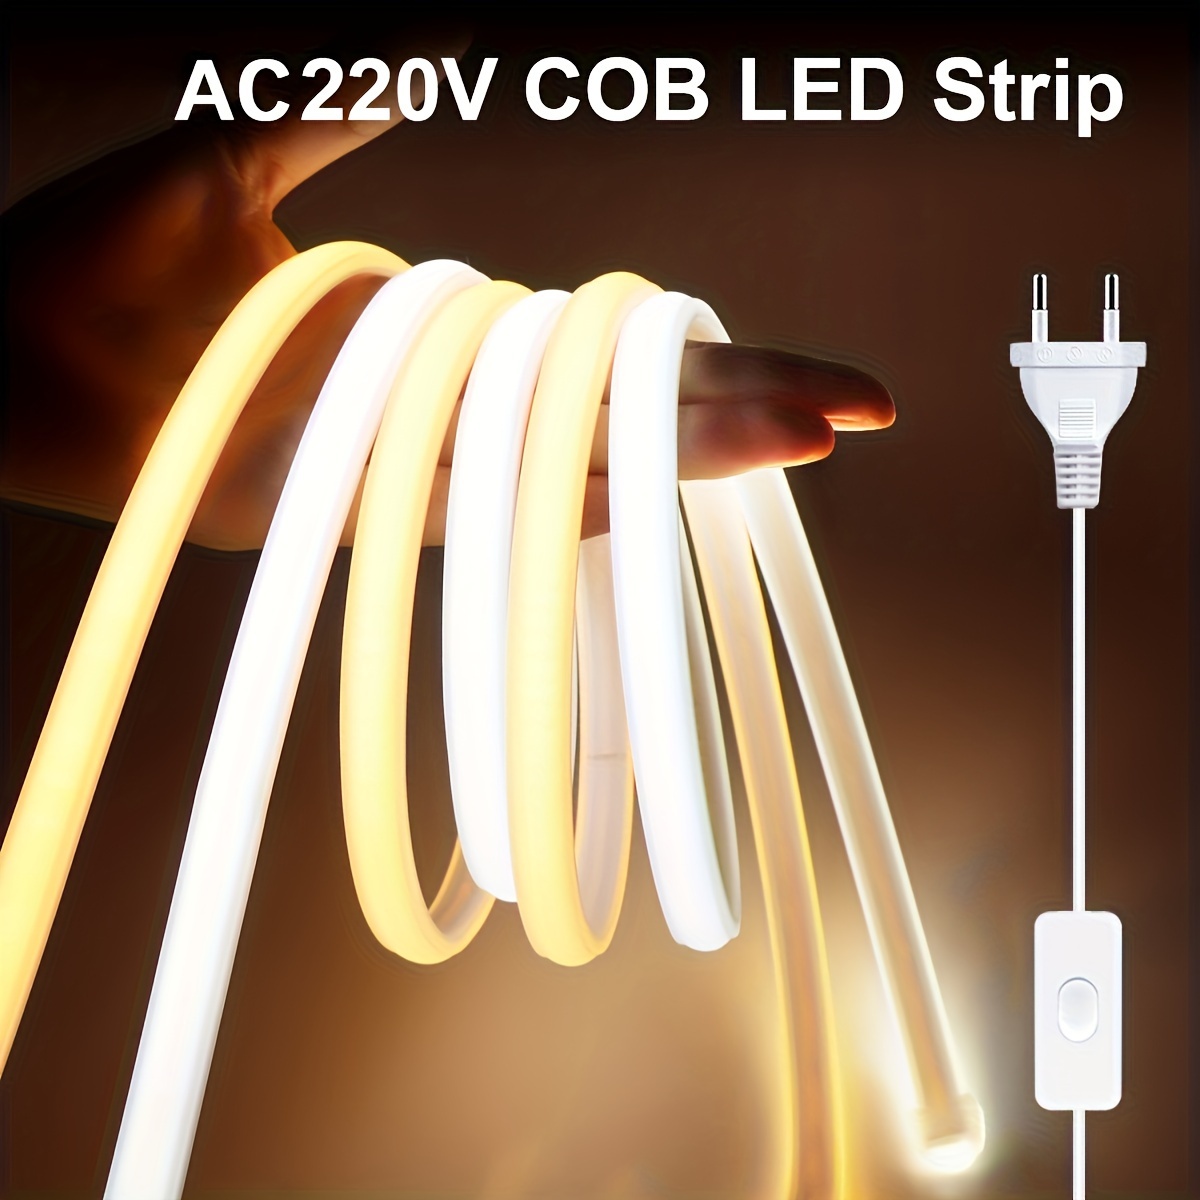 Fil LED fluorescent lumineux en fil EL flexible 10 m de corde fluo étanche,  bande LED stroboscopique pour décoration de fête (jaune) (1 pièce)